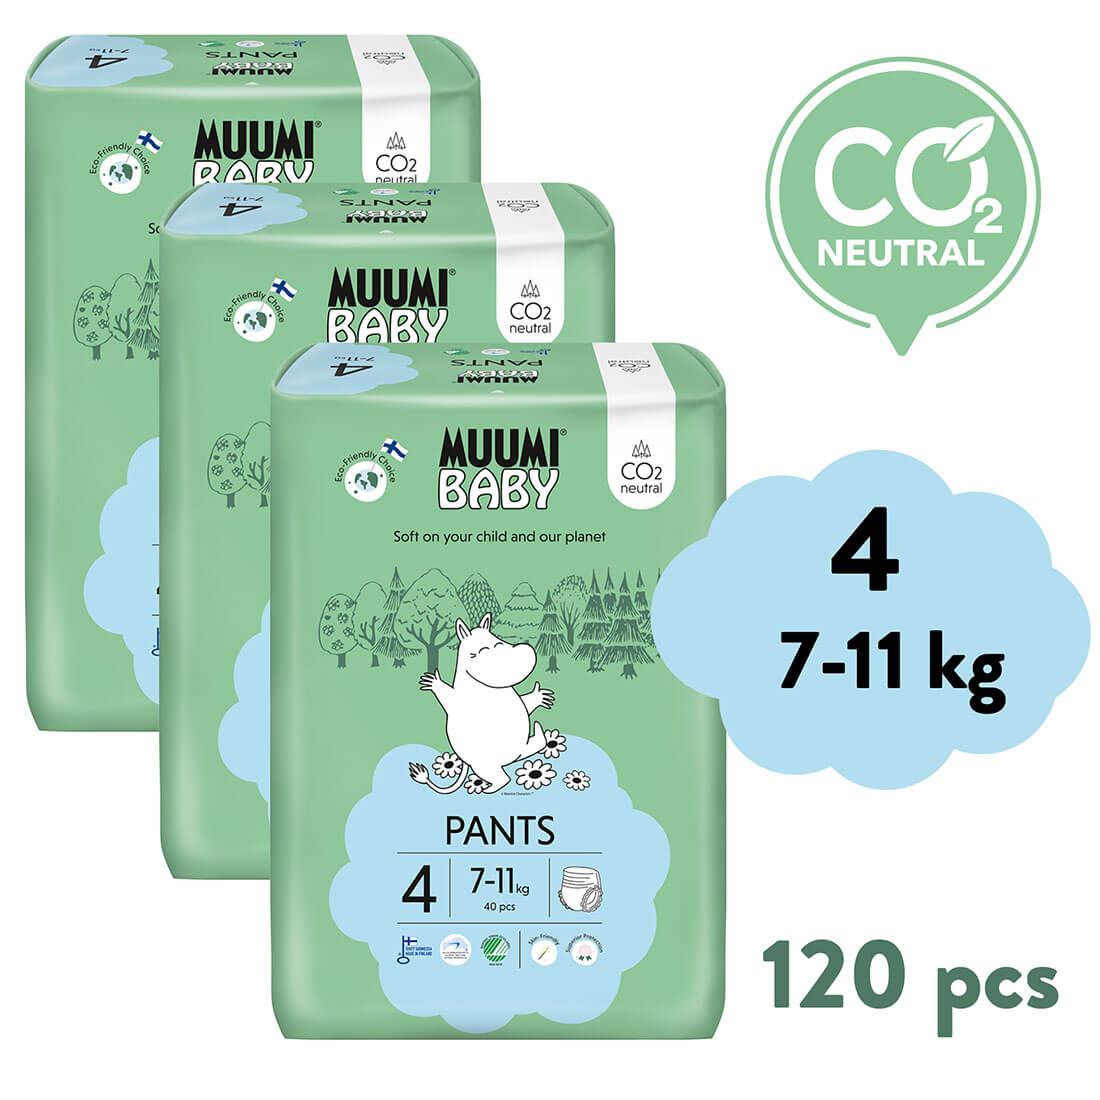 E-shop Muumi Baby Pants 4 Maxi 7-11 kg (120 ks), mesačné balenie nohavičkových eko plienok